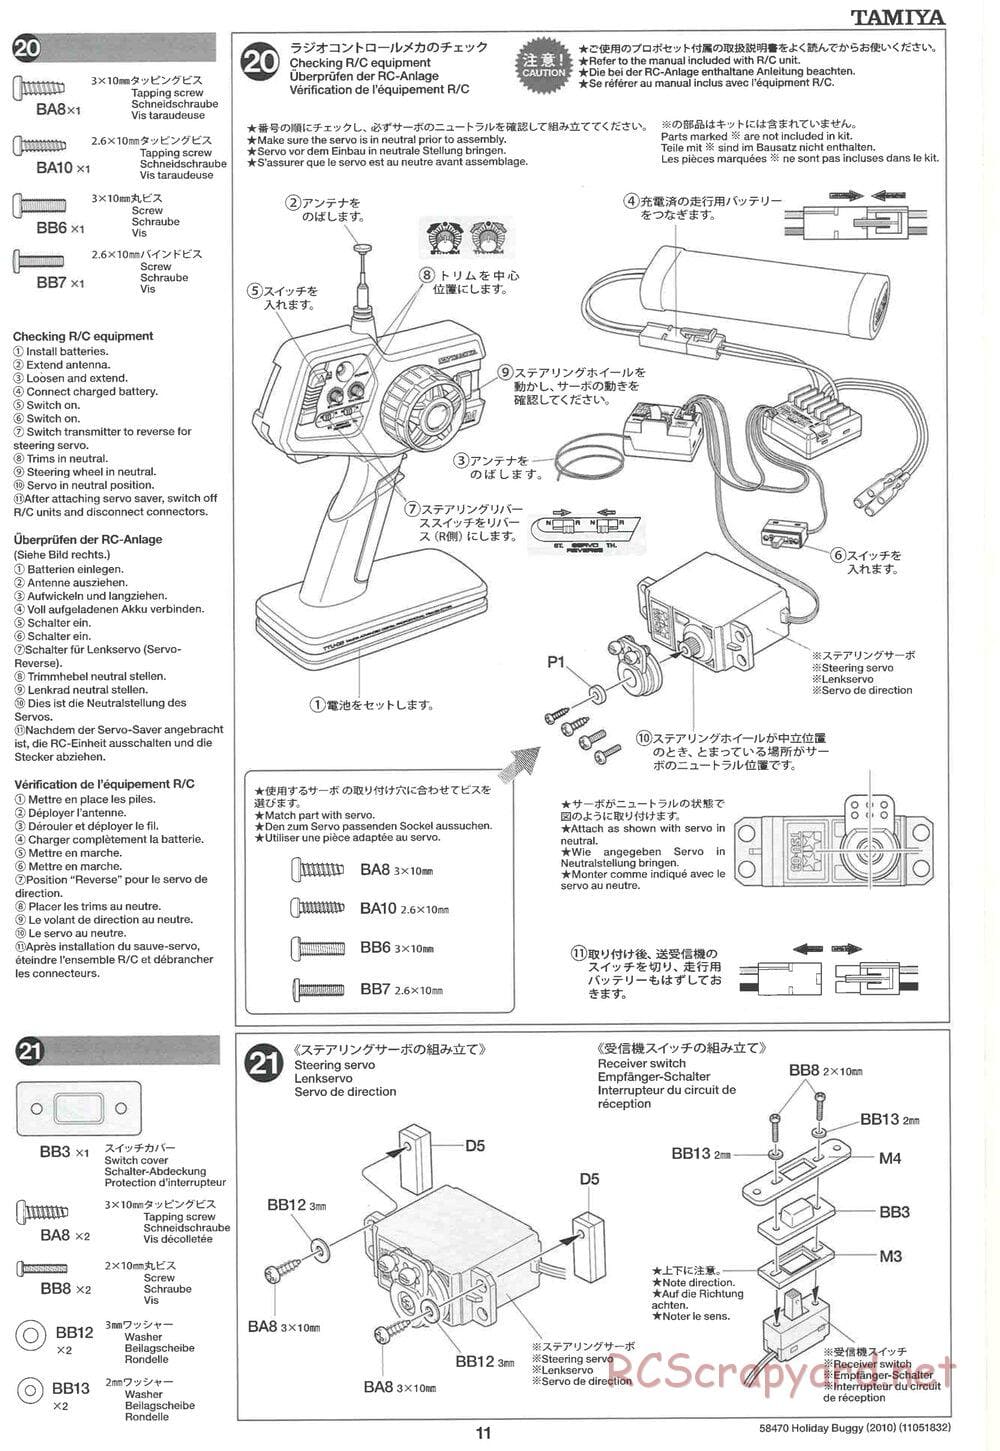 Tamiya - Holiday Buggy 2010 Chassis - Manual - Page 11